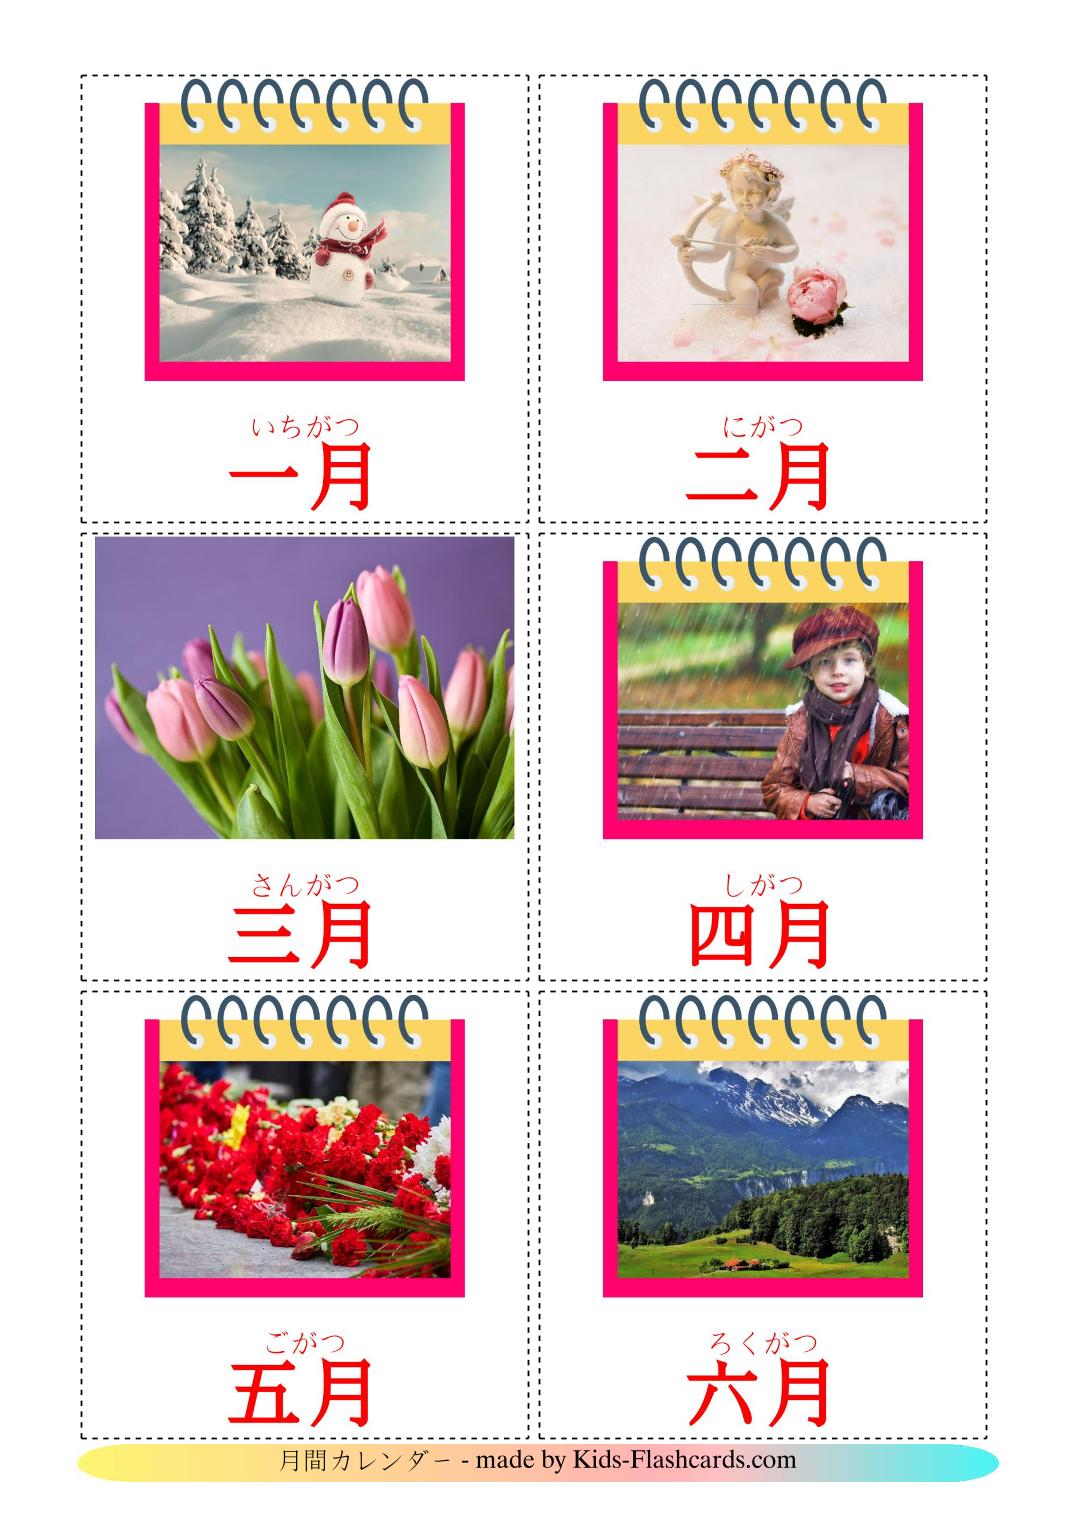 Meses del año - 12 fichas de japonés para imprimir gratis 